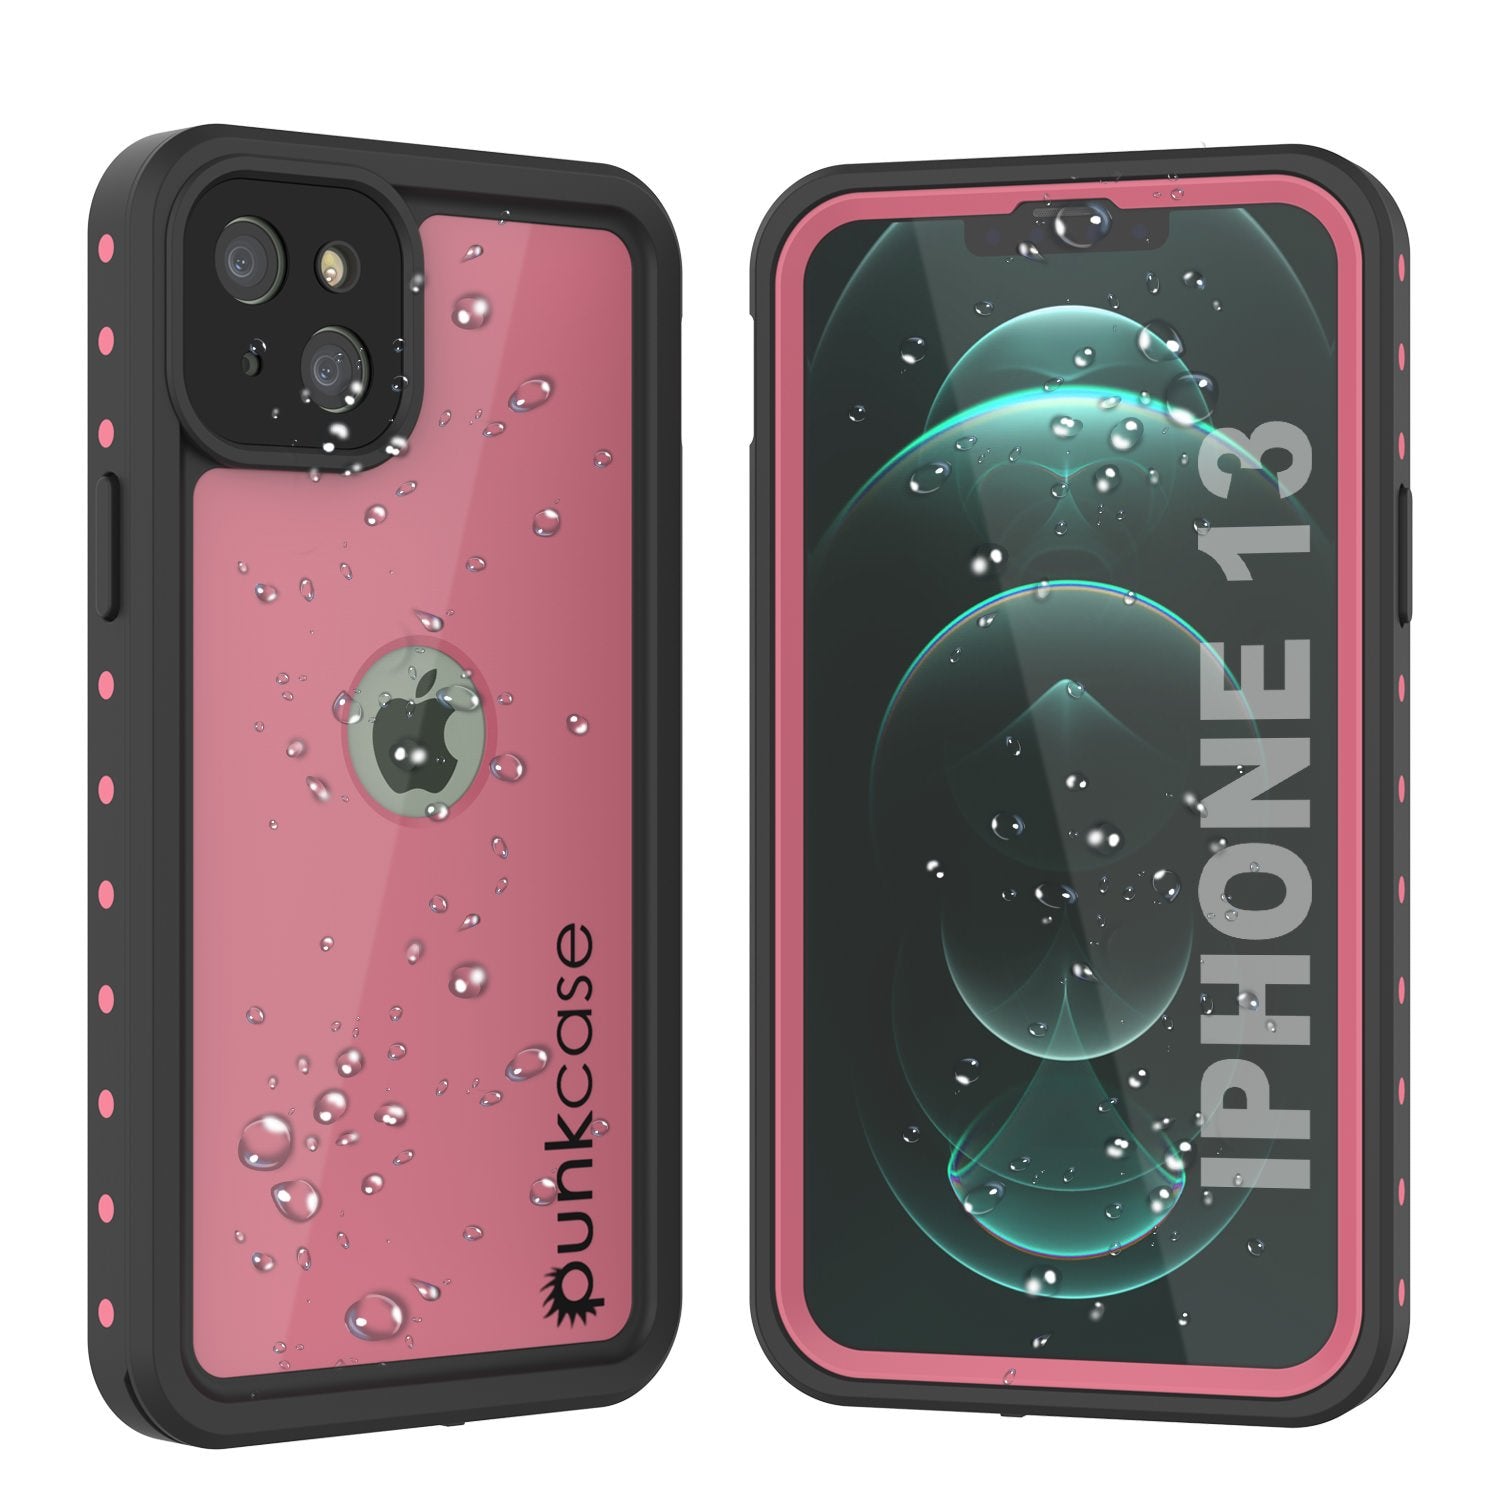 iPhone 13 Waterproof IP68 Case, Punkcase [Pink] [StudStar Series] [Slim Fit] [Dirtproof] (Color in image: Pink)